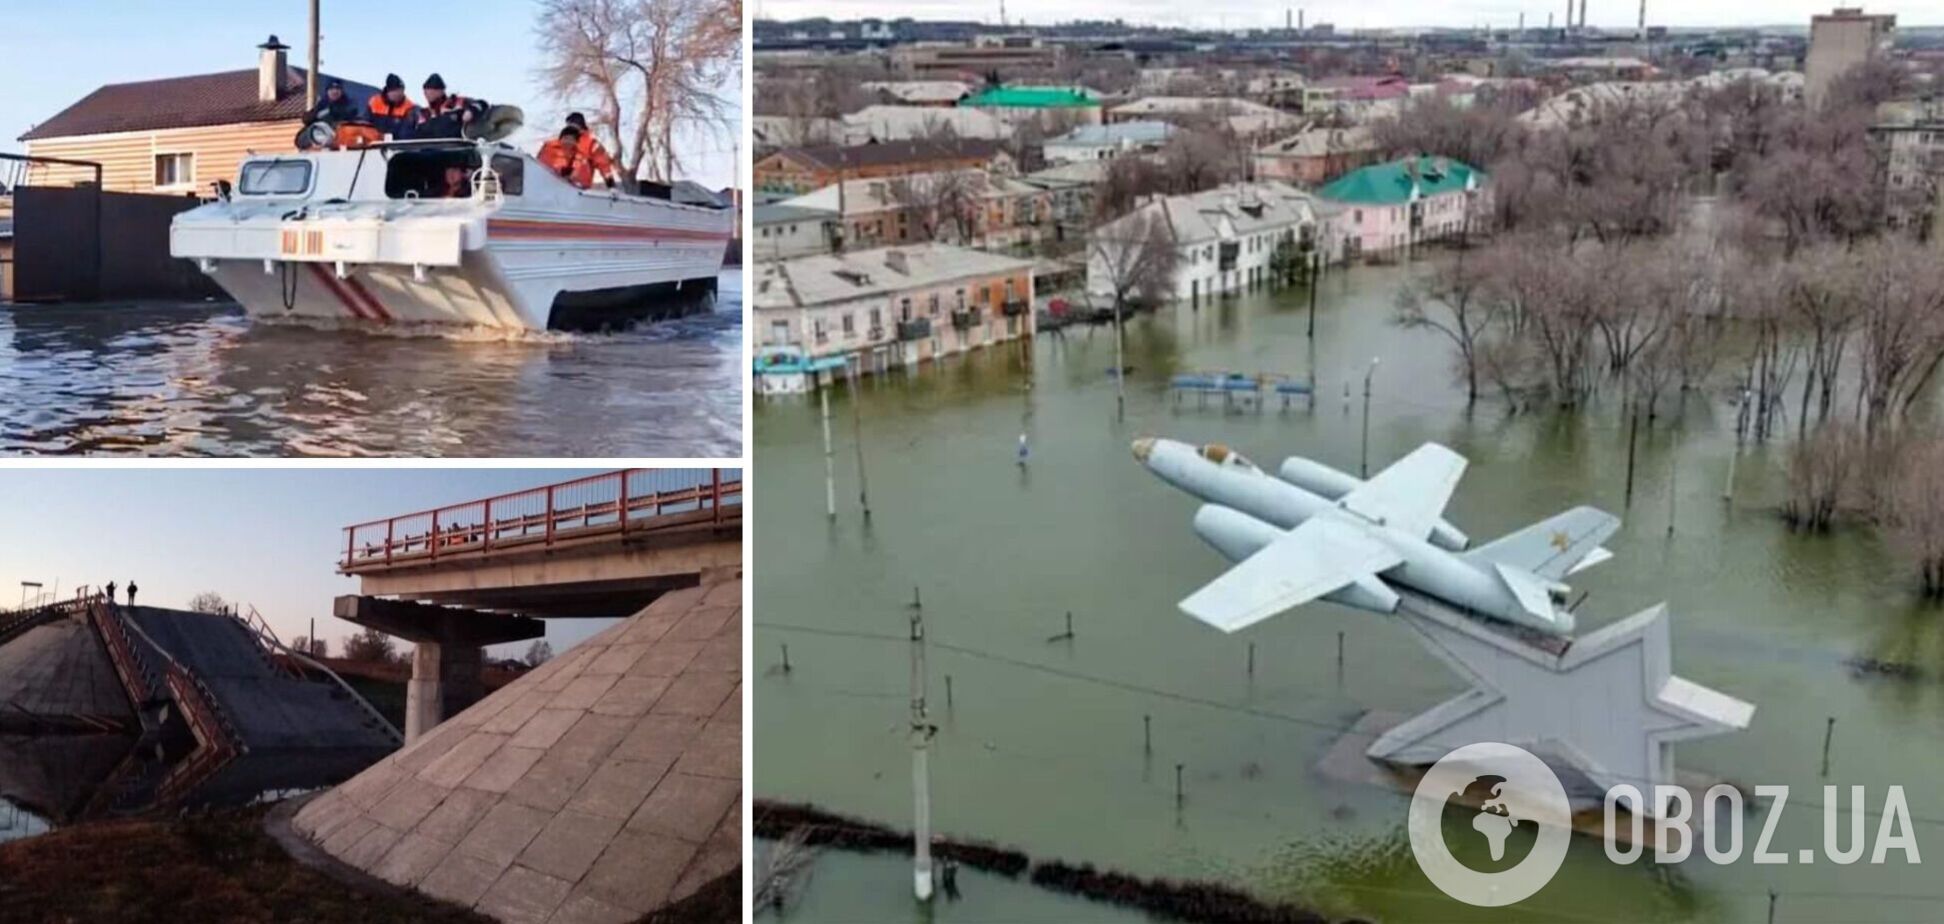 В России города уходят под воду и падают мосты. Власти обвиняют мышей и местных жителей